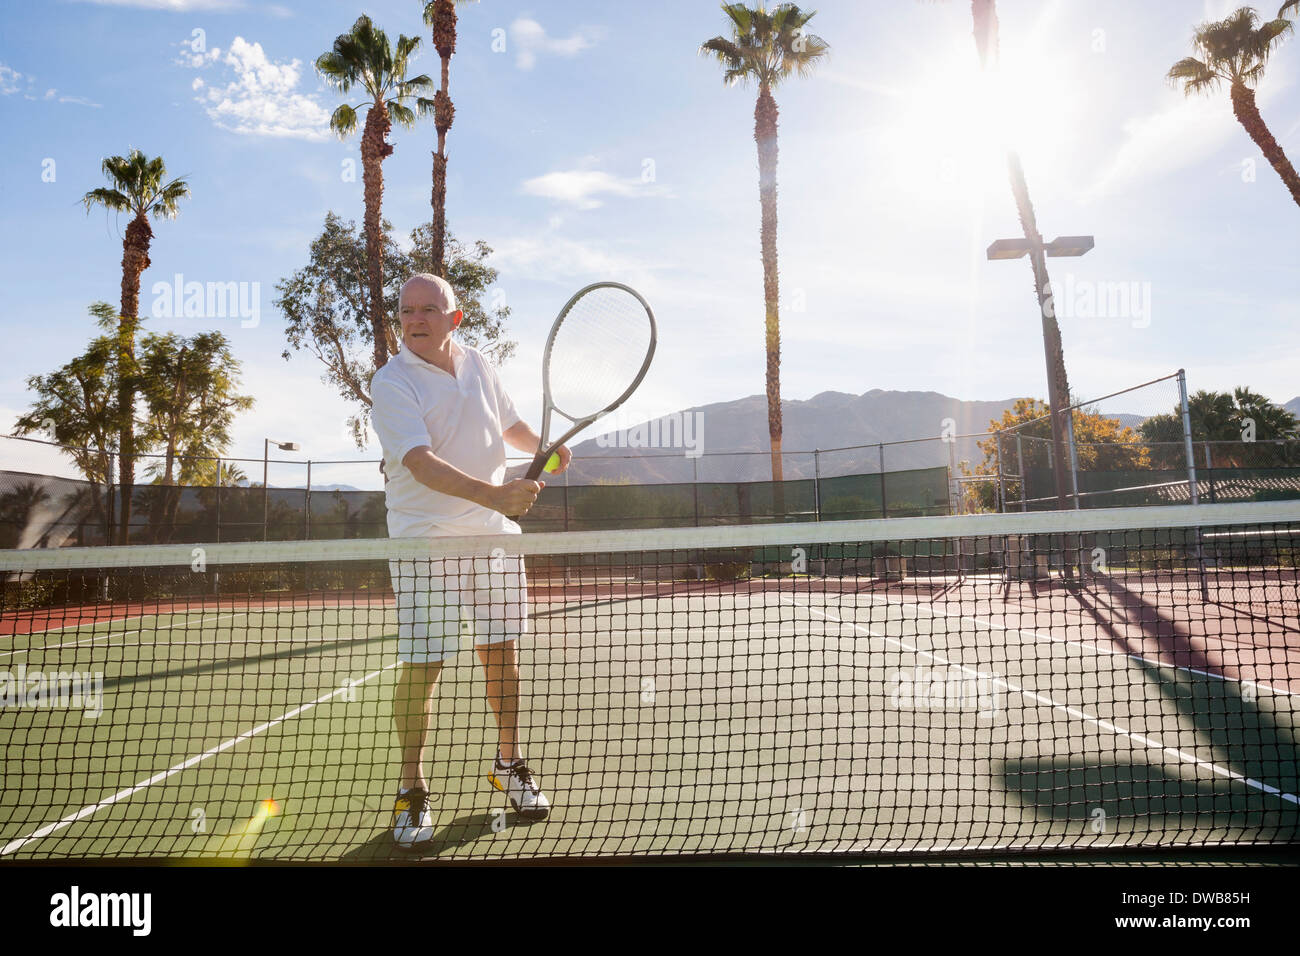 Senior male tennis player holding racket sur cour Banque D'Images